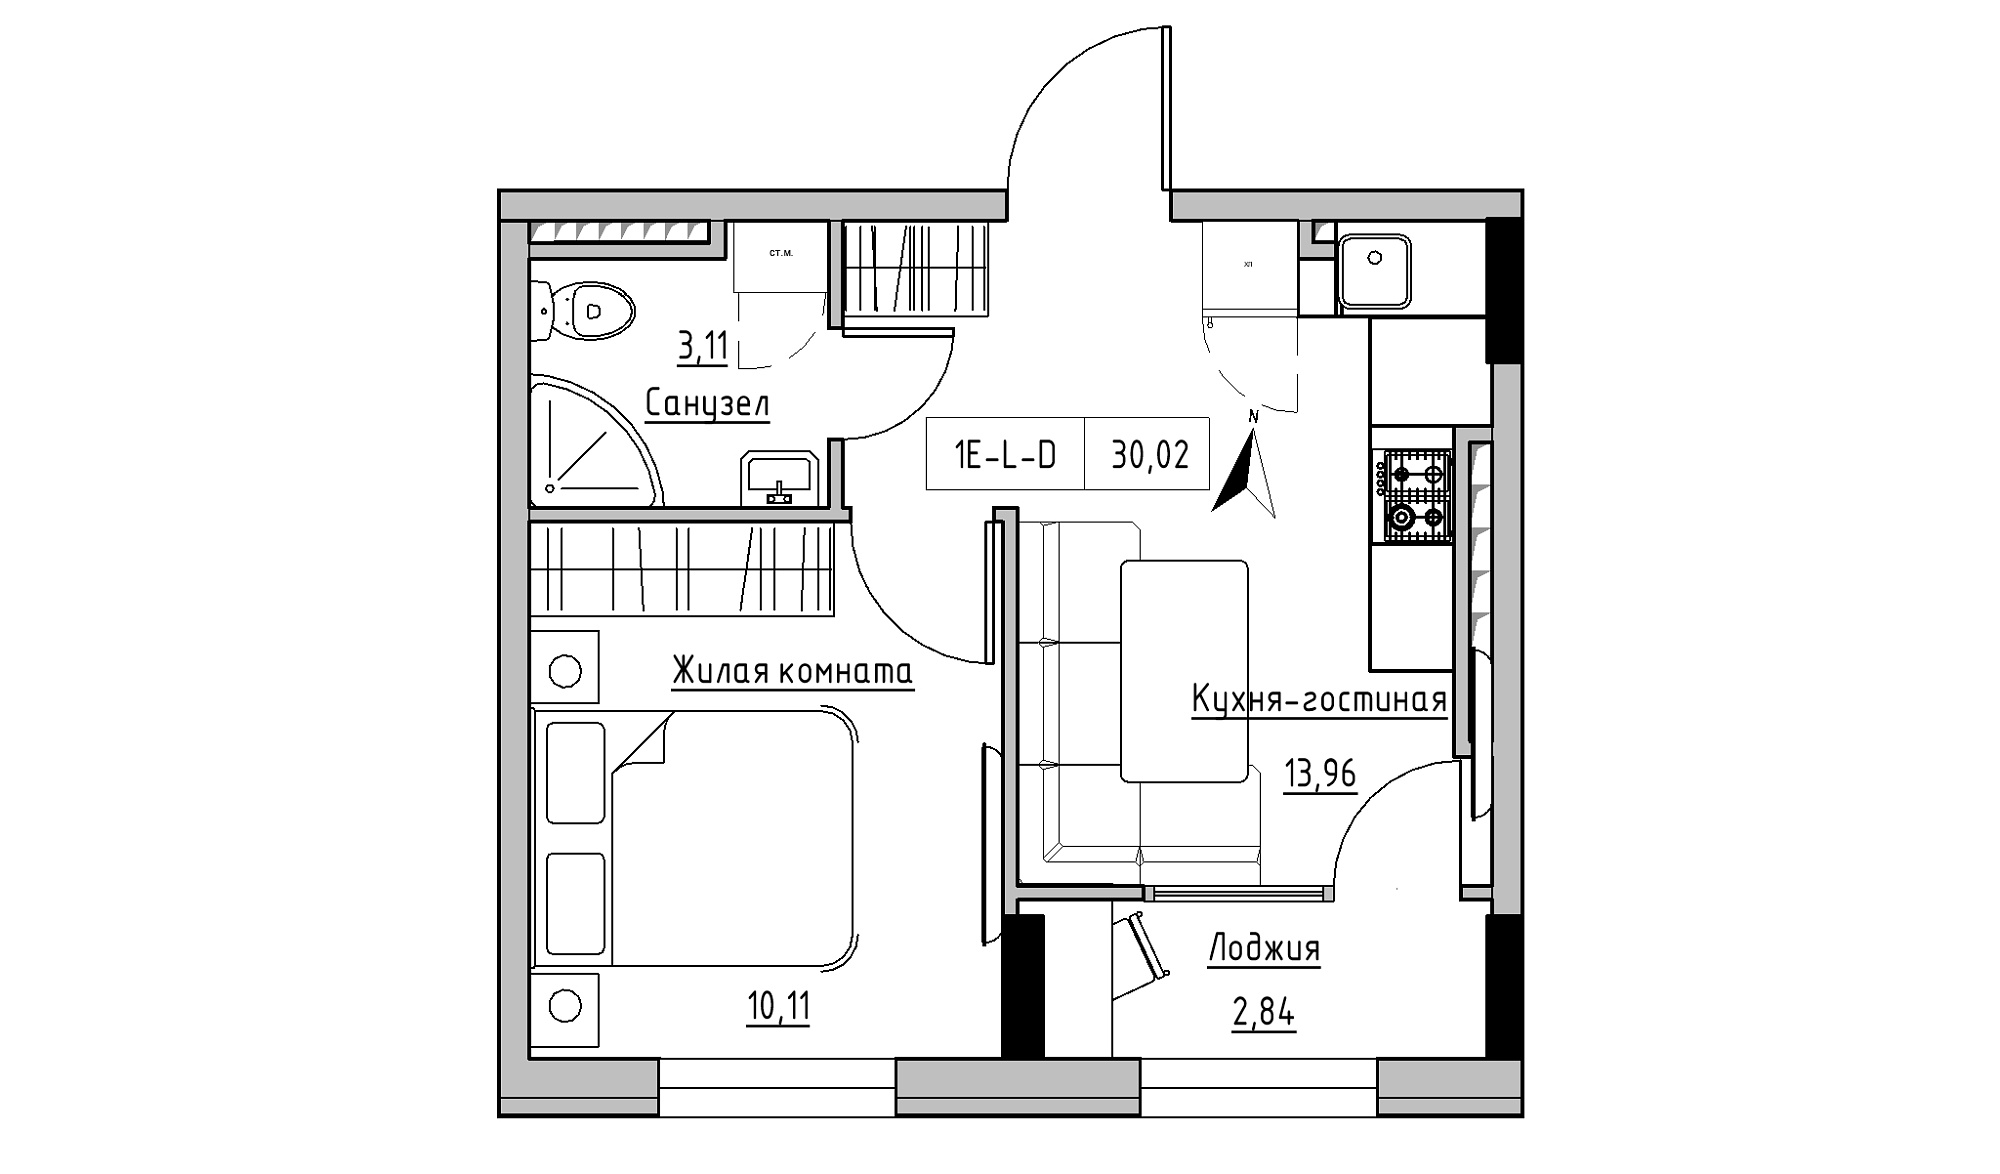 Планування 1-к квартира площею 30.02м2, KS-025-06/0014.